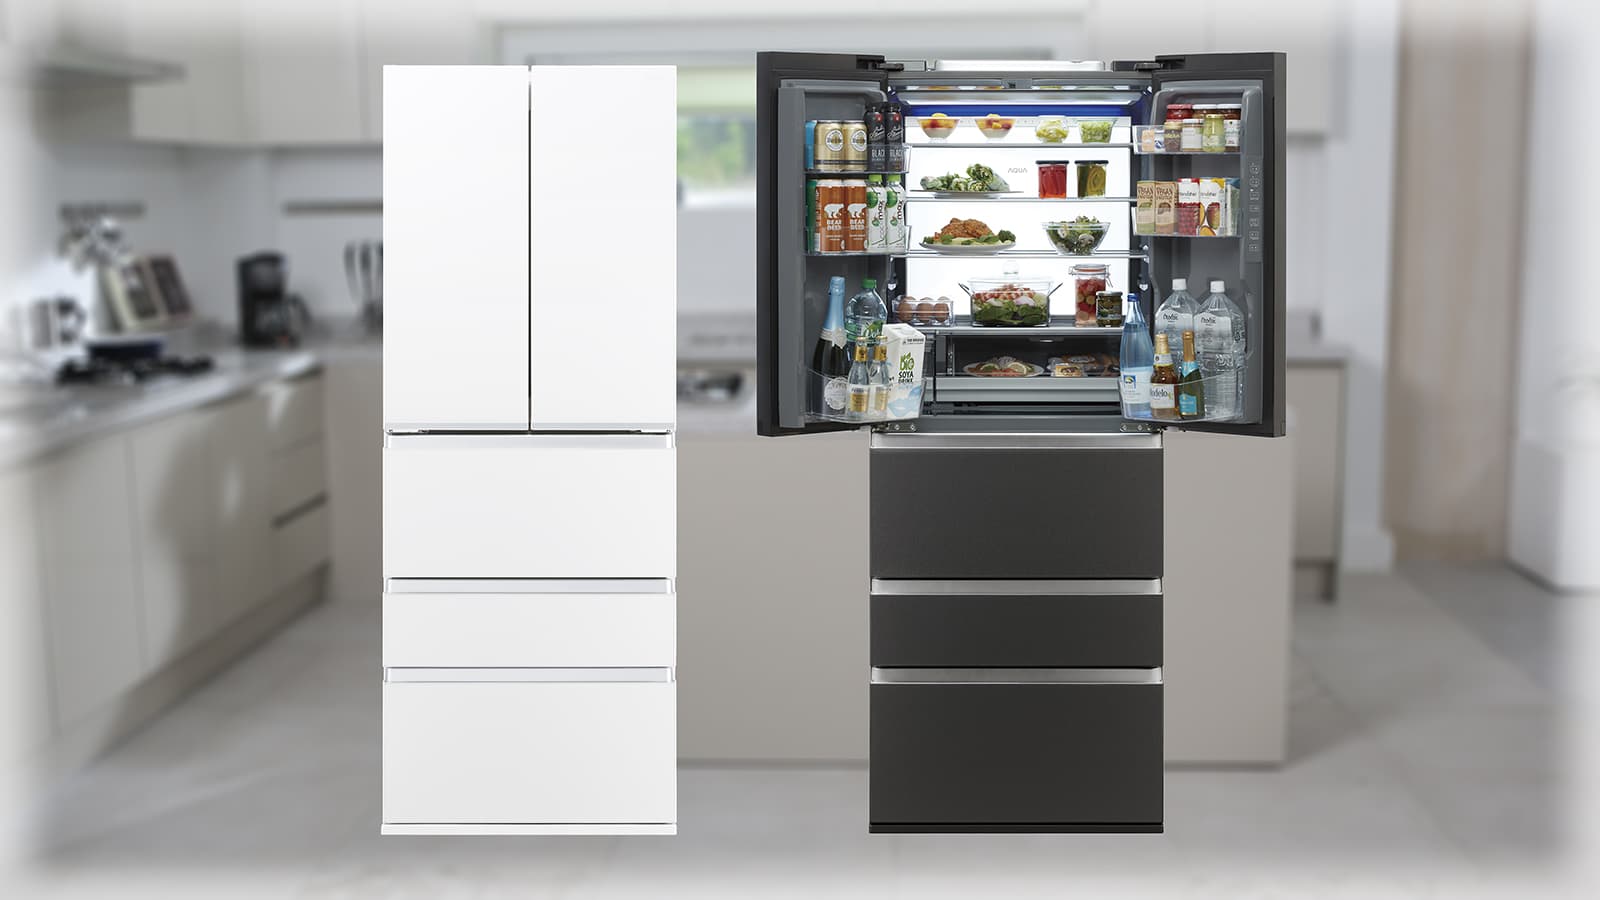 AQUA］食材の腐敗や乾燥を抑える鮮度保持機能を搭載した冷凍冷蔵庫「TX 